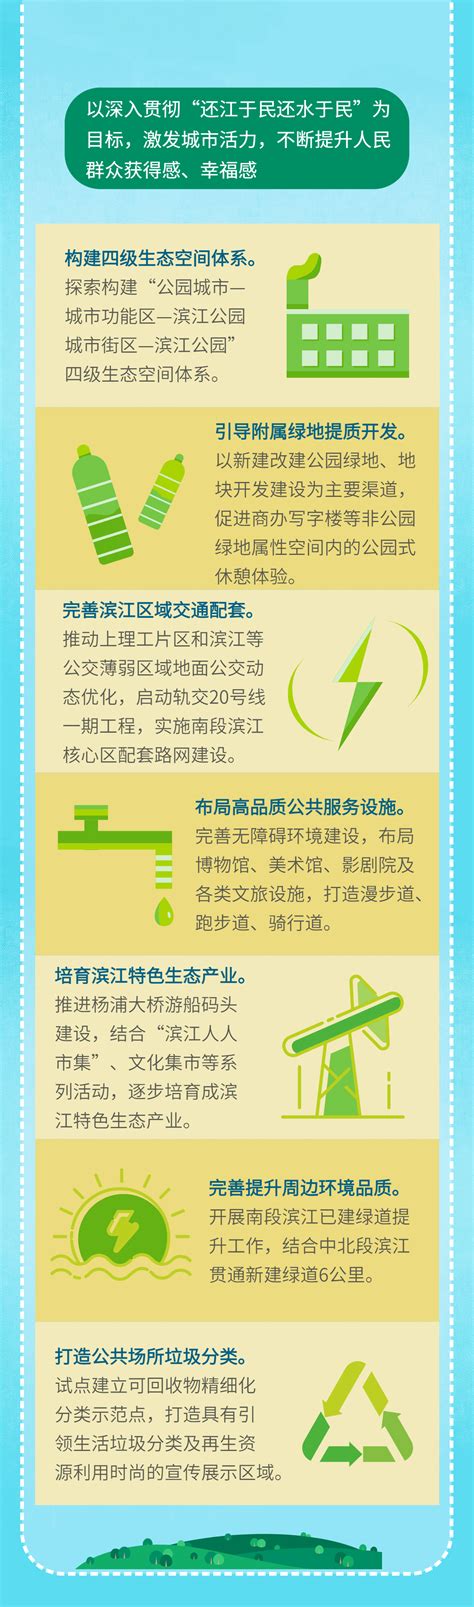 政务公开_上海杨浦_一图看懂《关于推进杨浦区应急避难场所建设的实施方案》